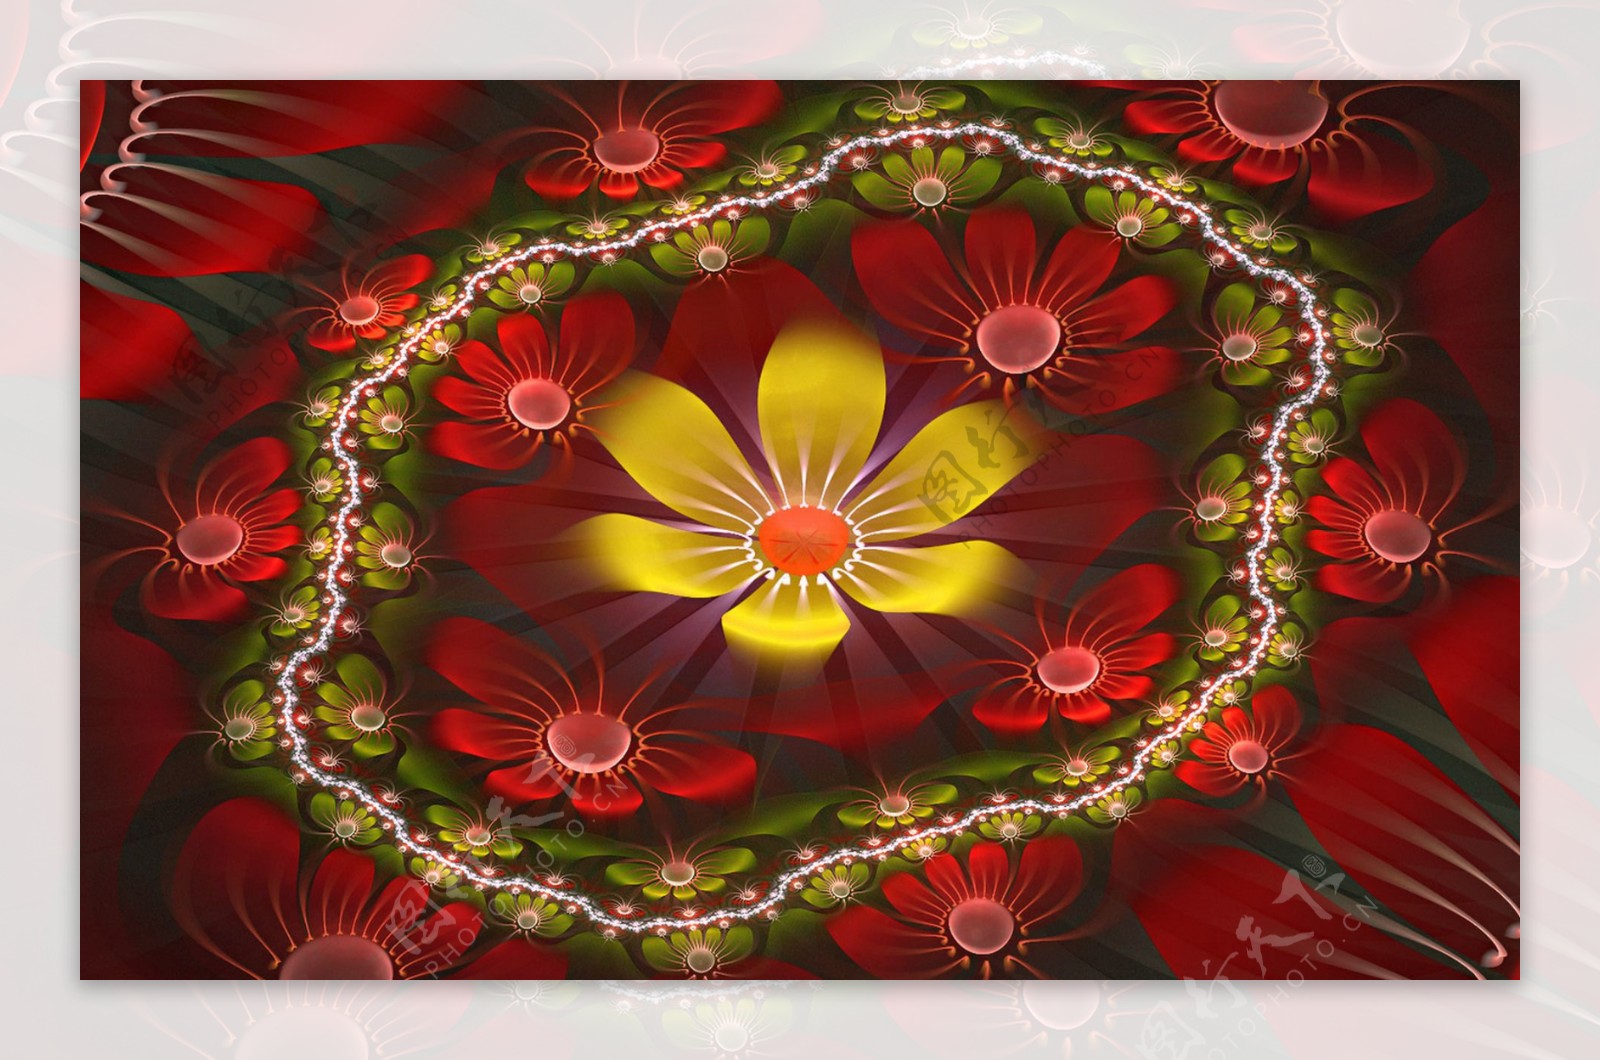 惊艳无比的红花群黄蕊数字分形花